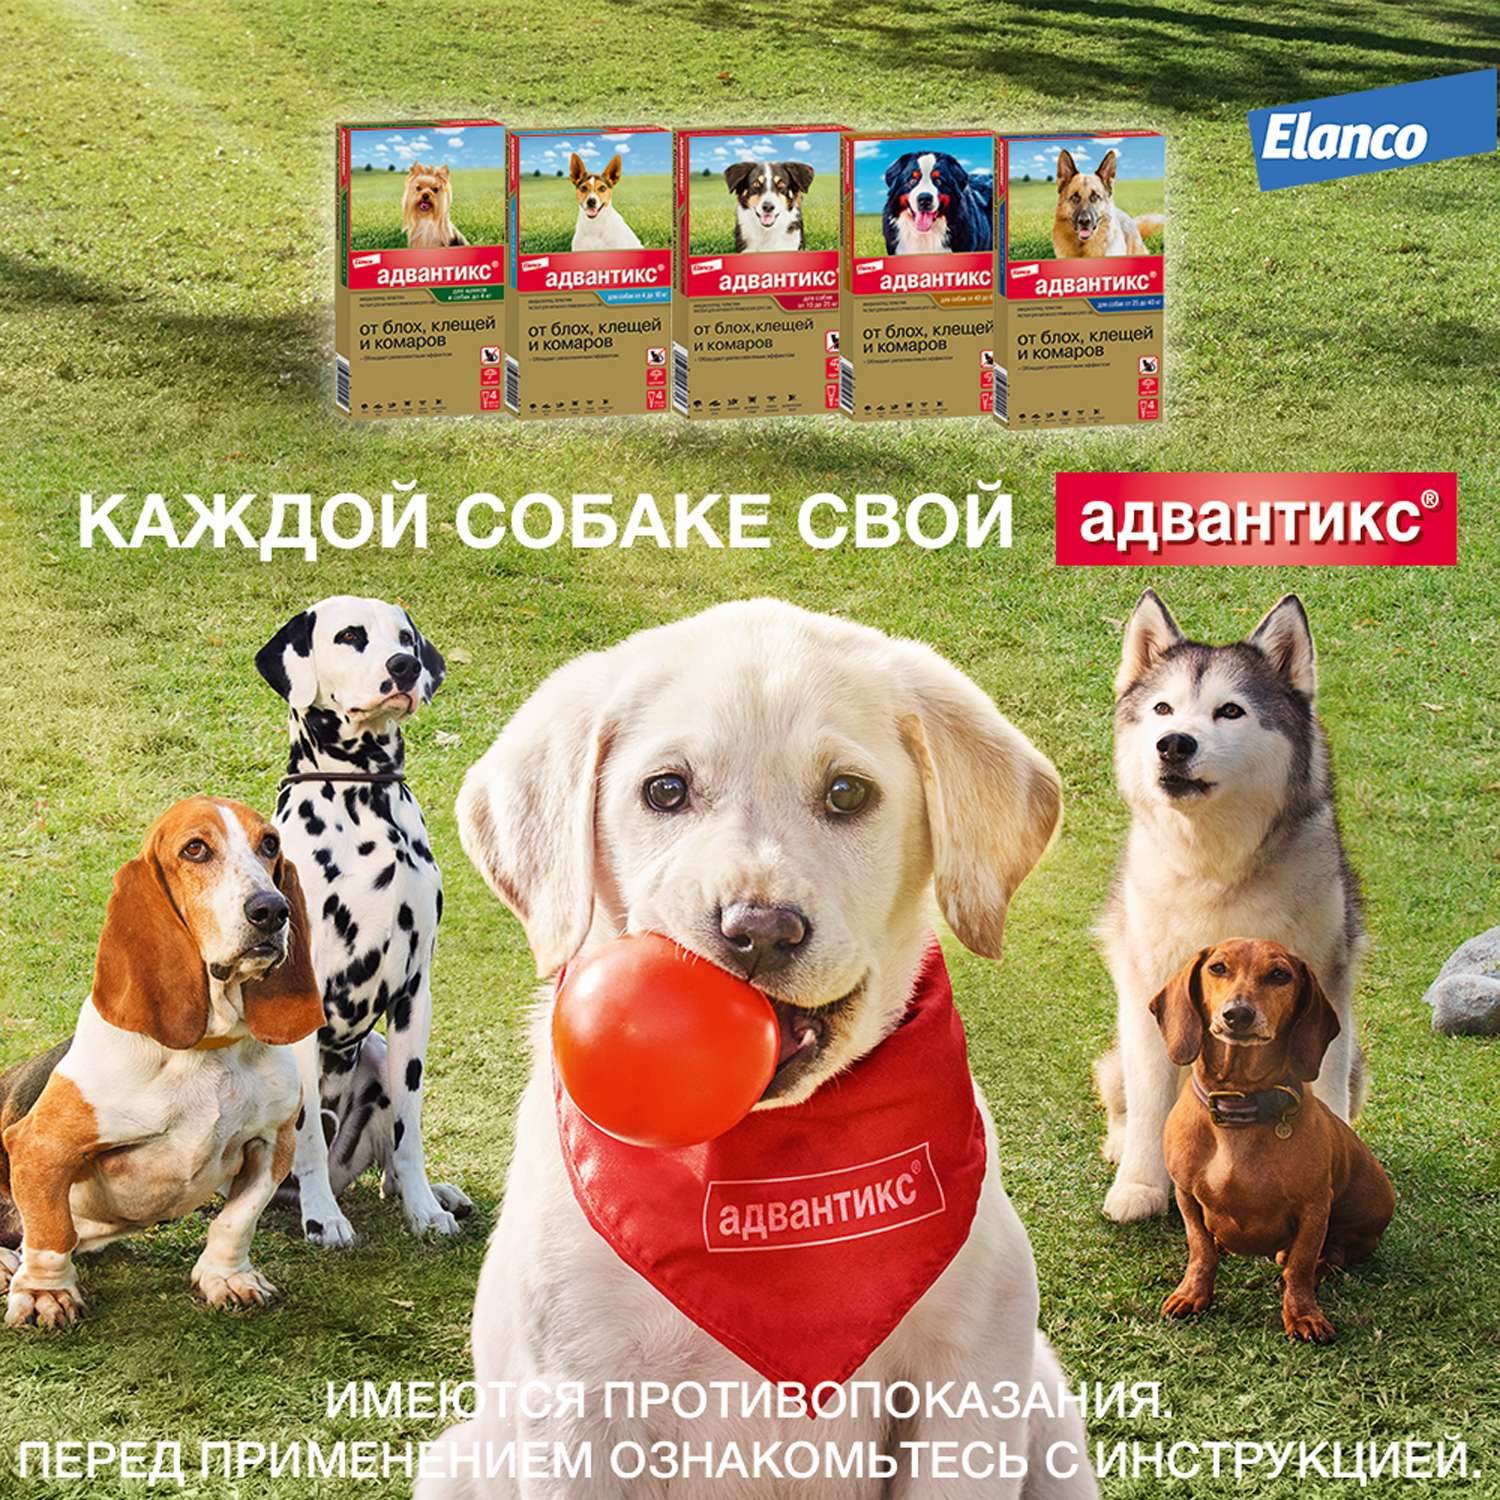 Капли для собак Elanco Адвантикс от 25 до 40 кг против блох и клещей 1пипетка - фото 9